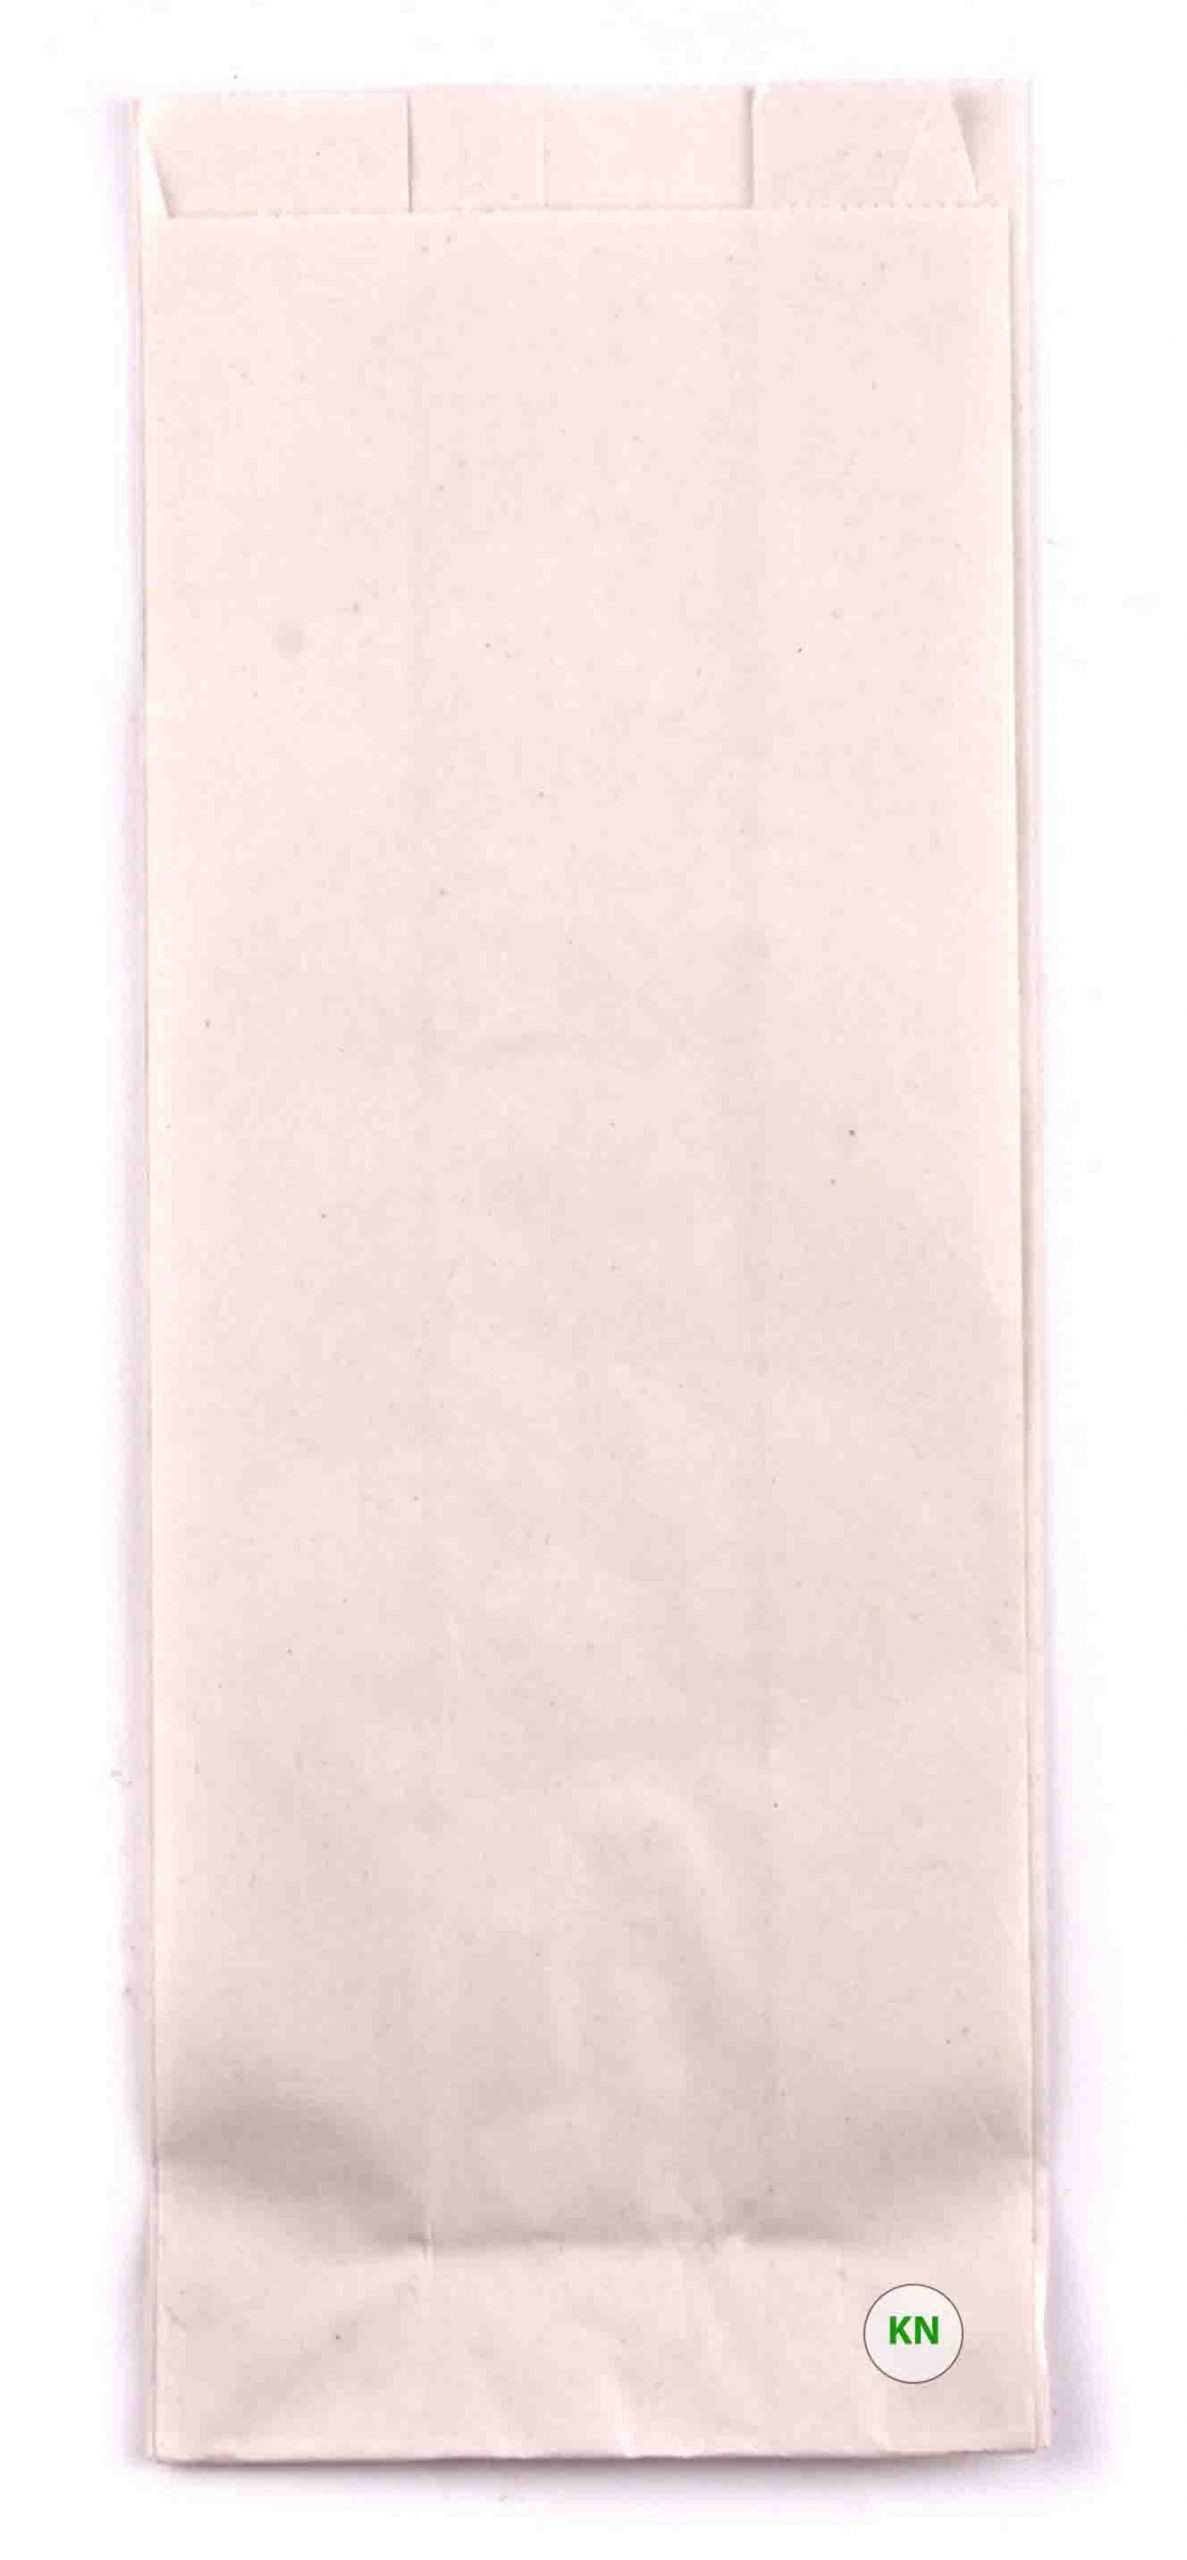 Пакет паперовий білий для французького хот-догу, 200 х 70 мм